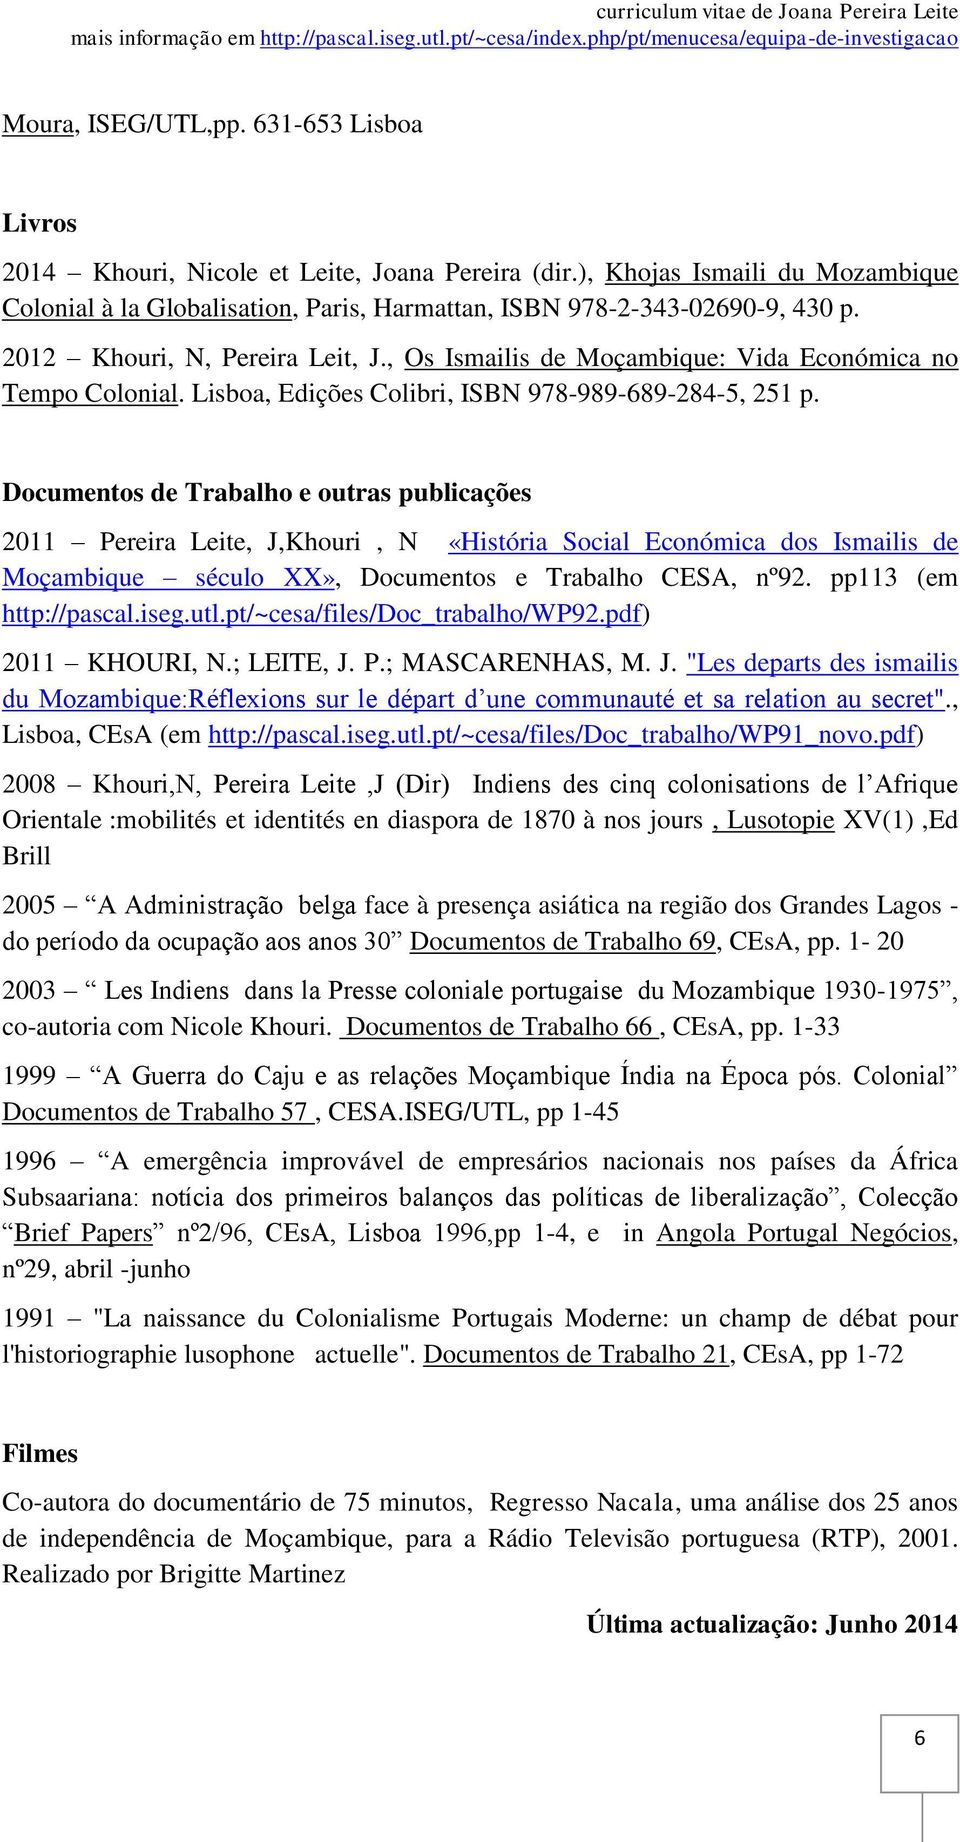 Documentos de Trabalho e outras publicações 2011 Pereira Leite, J,Khouri, N «História Social Económica dos Ismailis de Moçambique século XX», Documentos e Trabalho CESA, nº92. pp113 (em http://pascal.